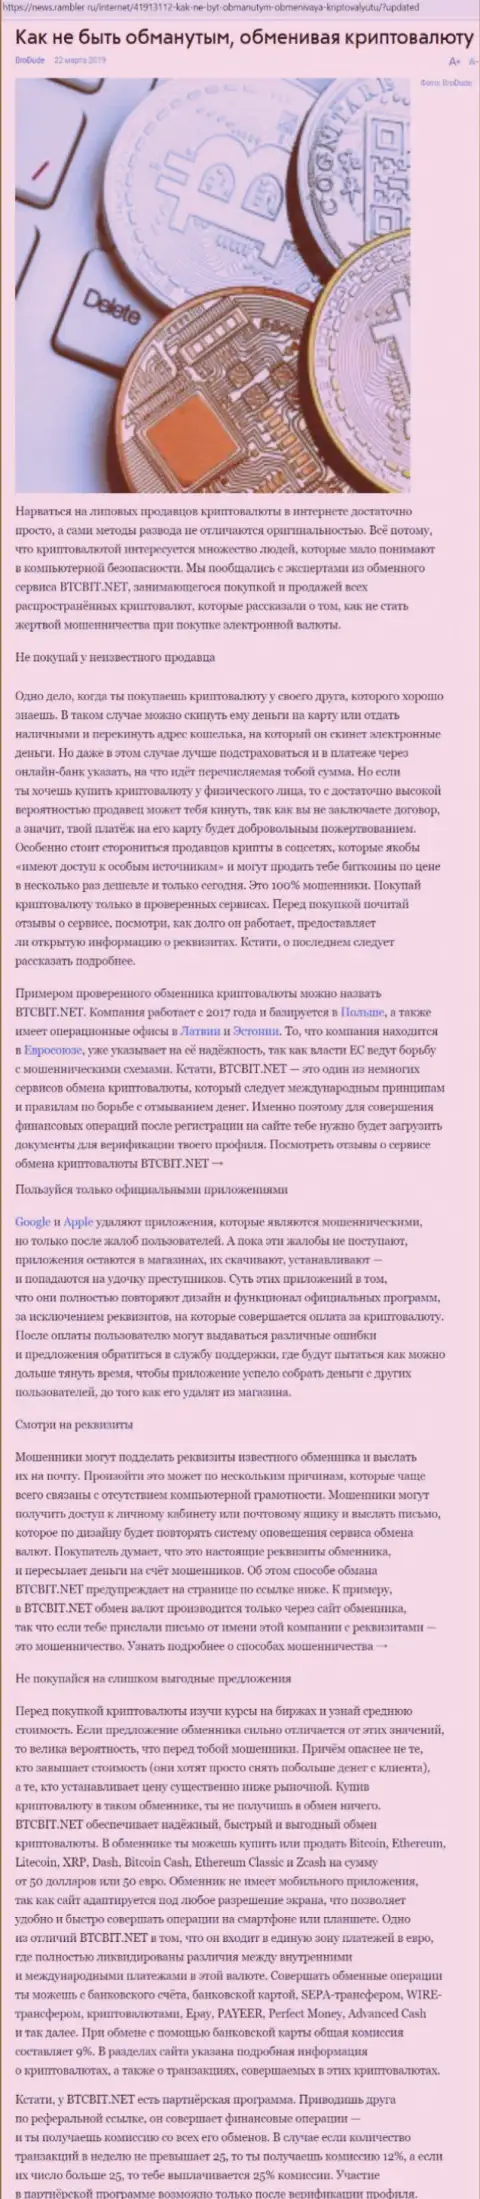 Публикация о BTCBIT Net на news rambler ru